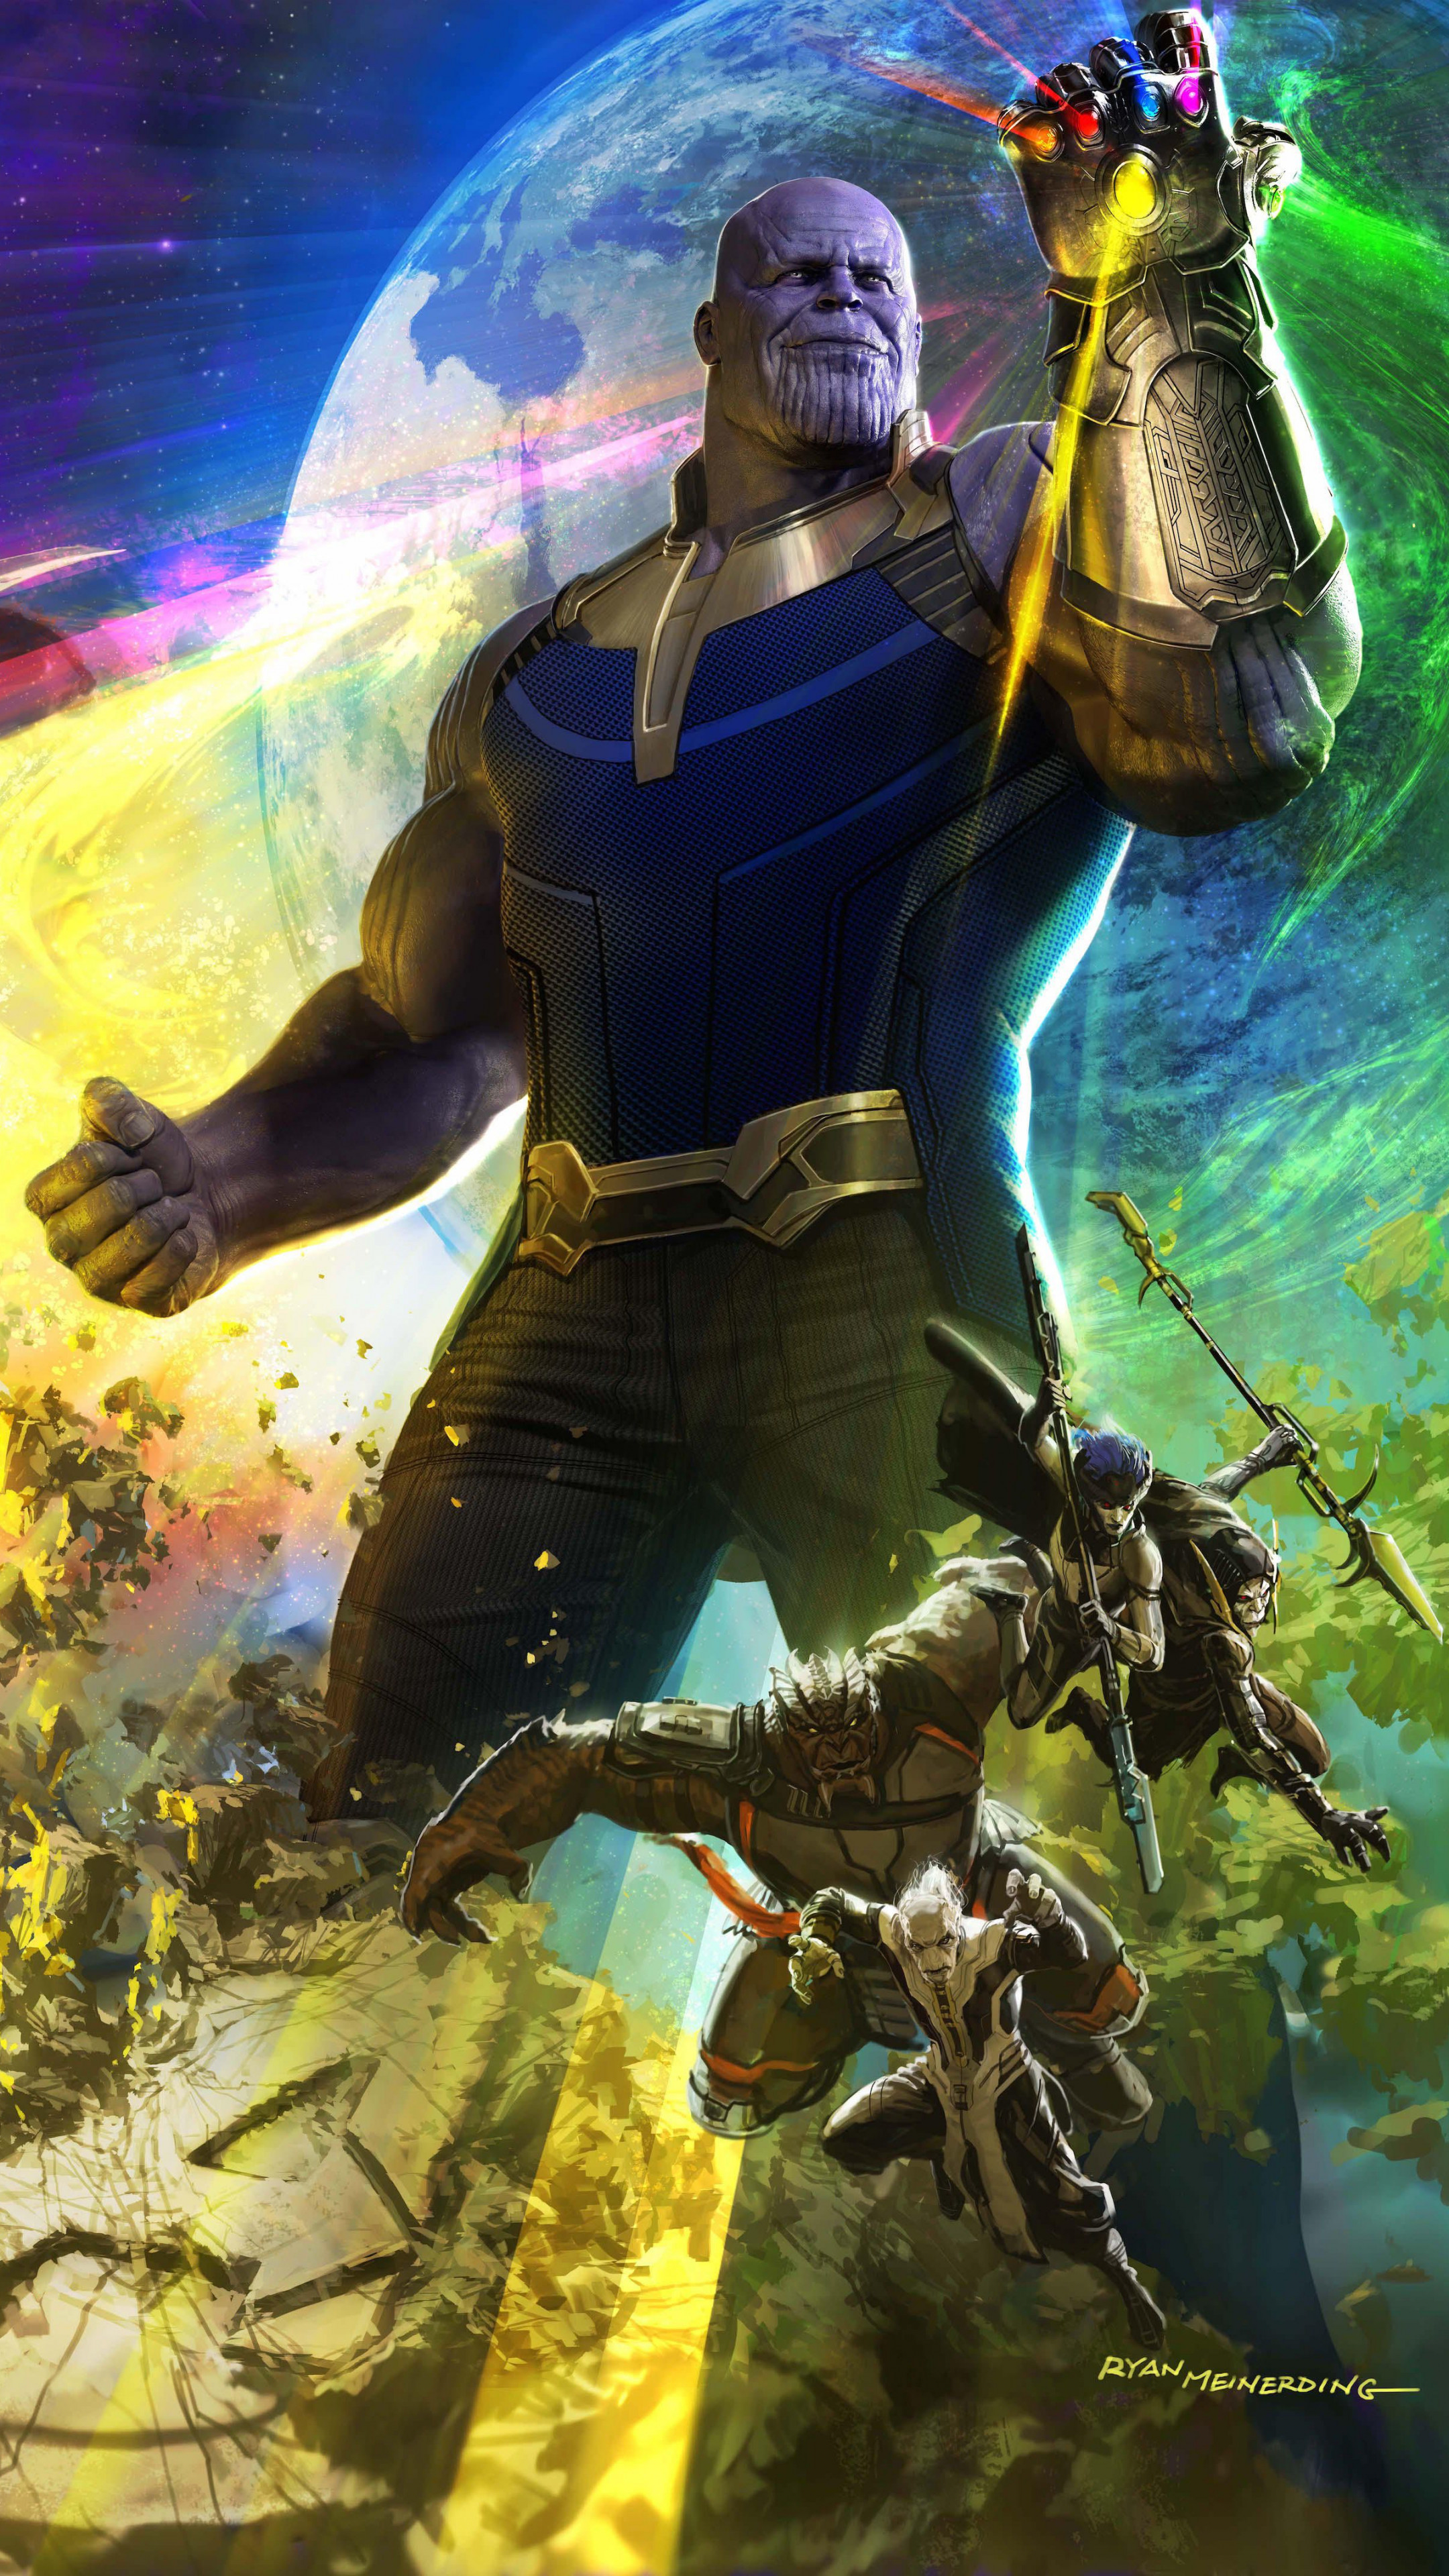 35 Gambar Avengers Infinity War Wallpaper Hd Android terbaru 2020